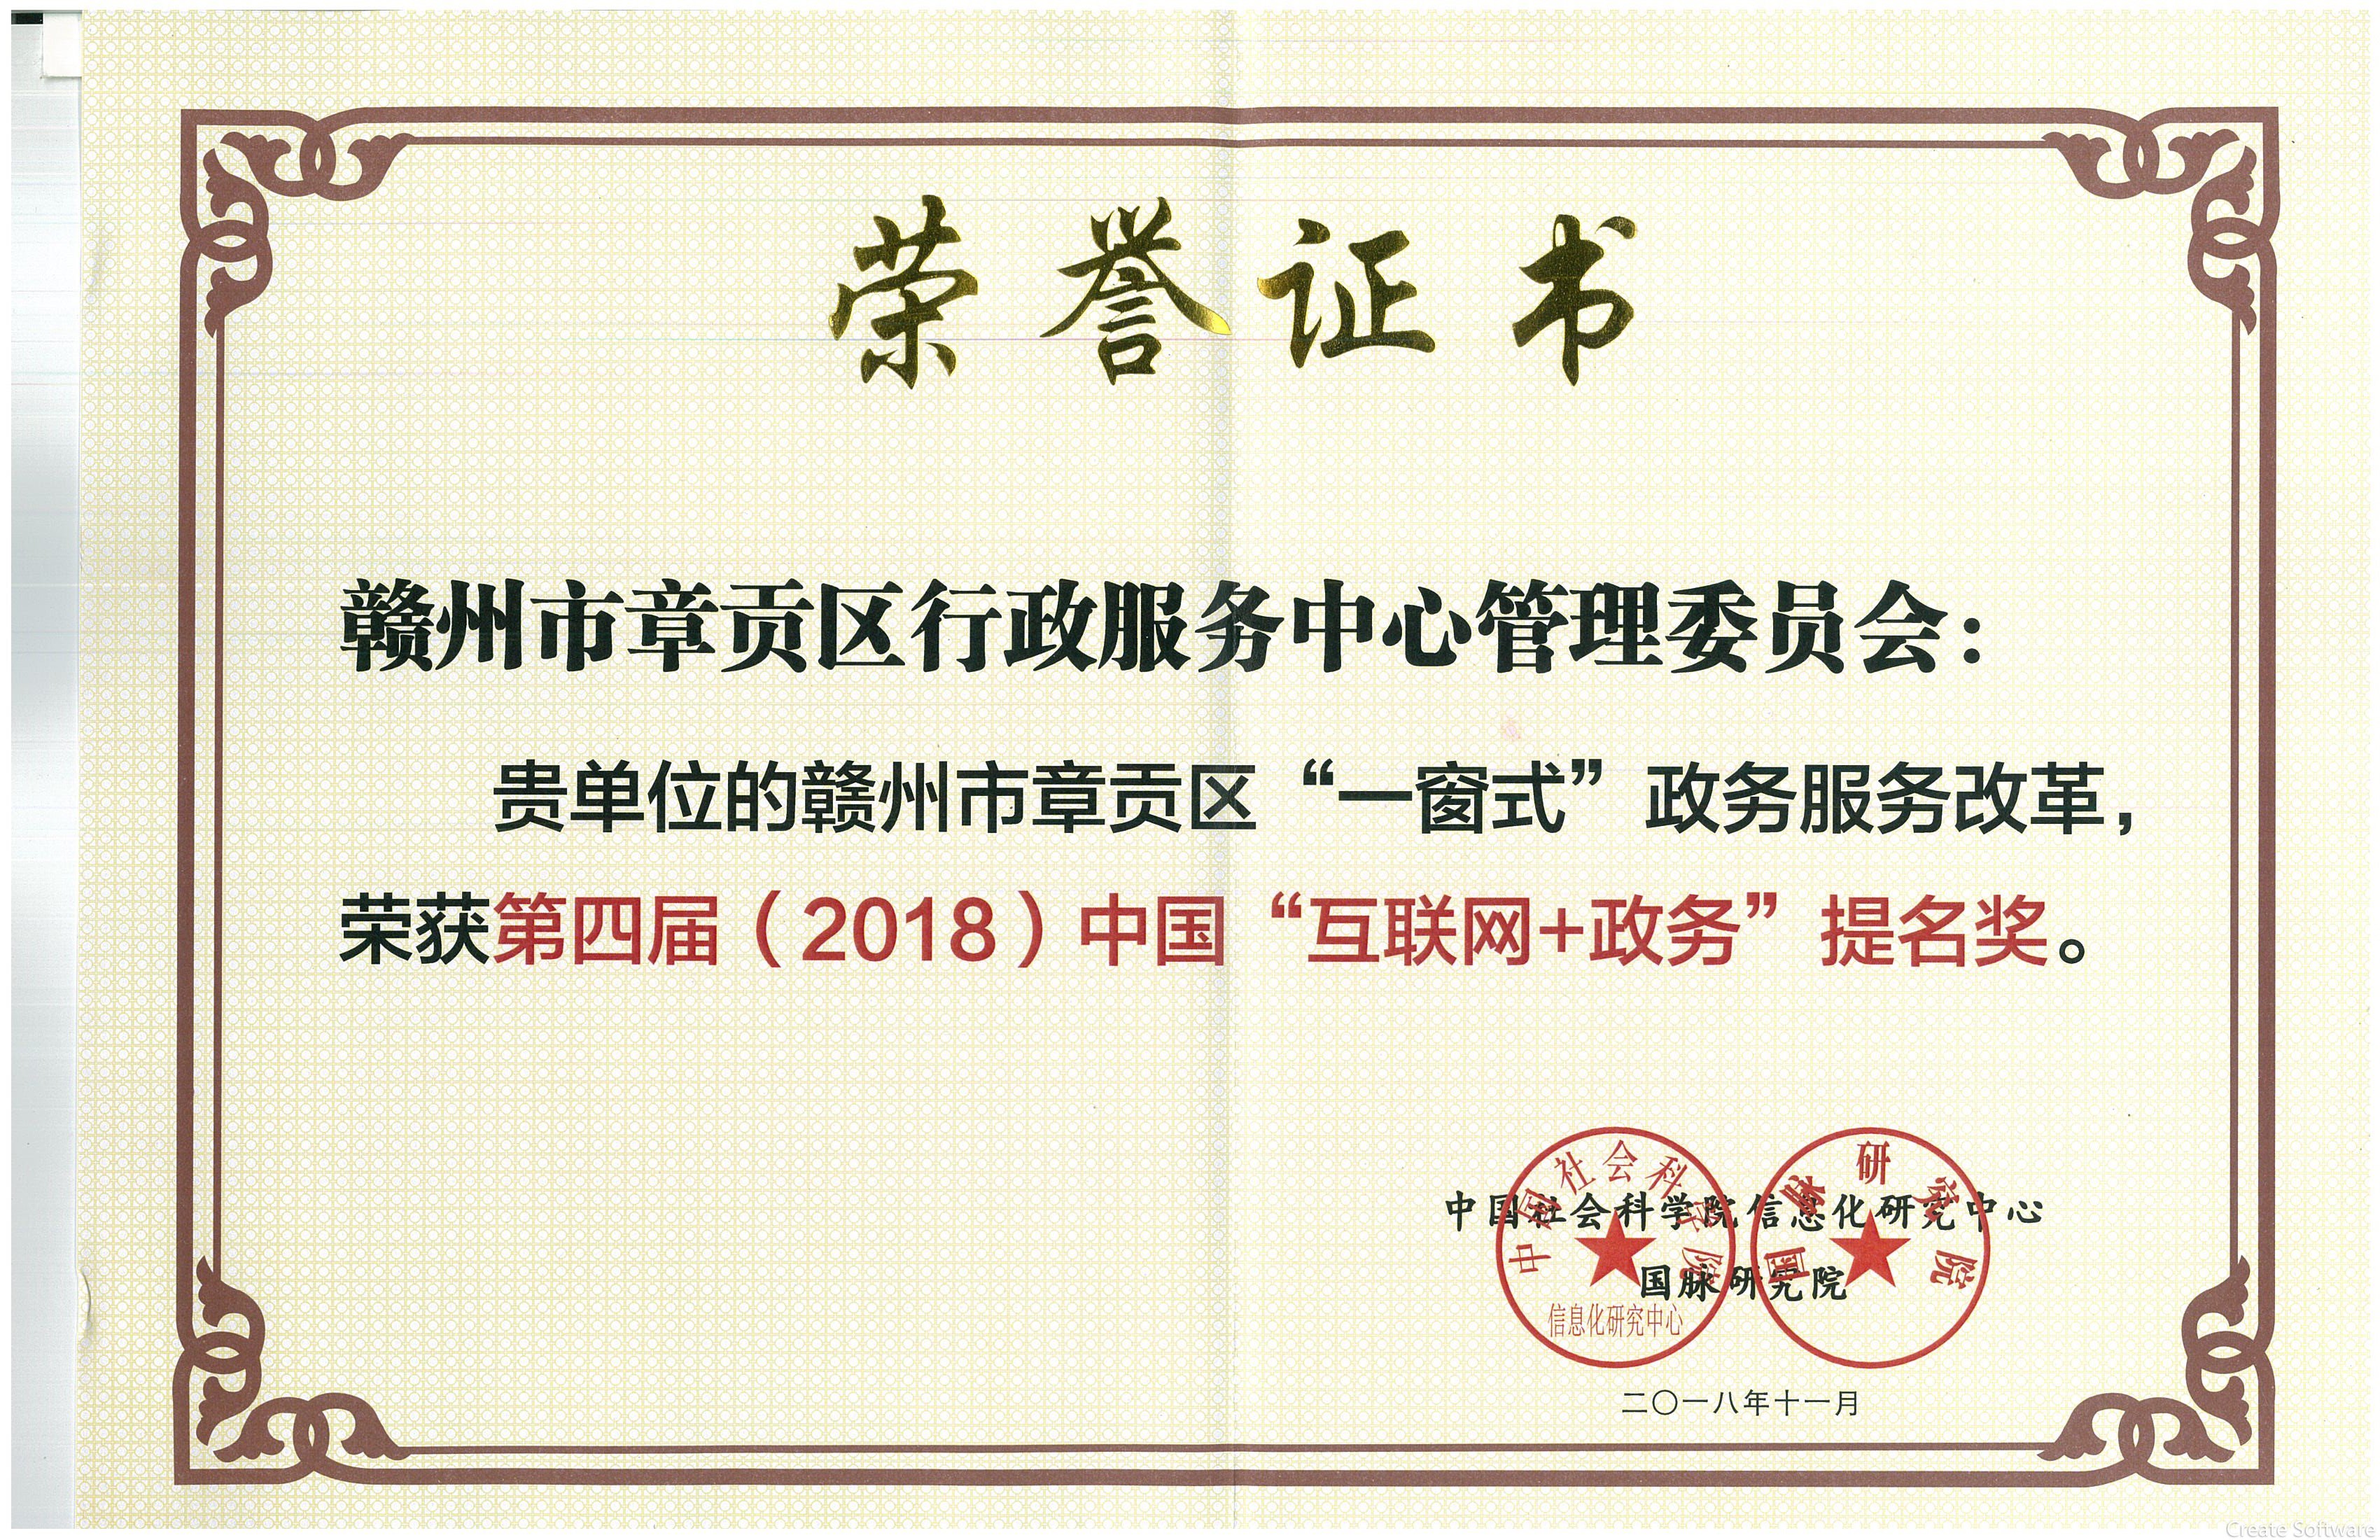 一窗式政務服務改革獲第四屆（2018）中國互聯網+政務提名獎